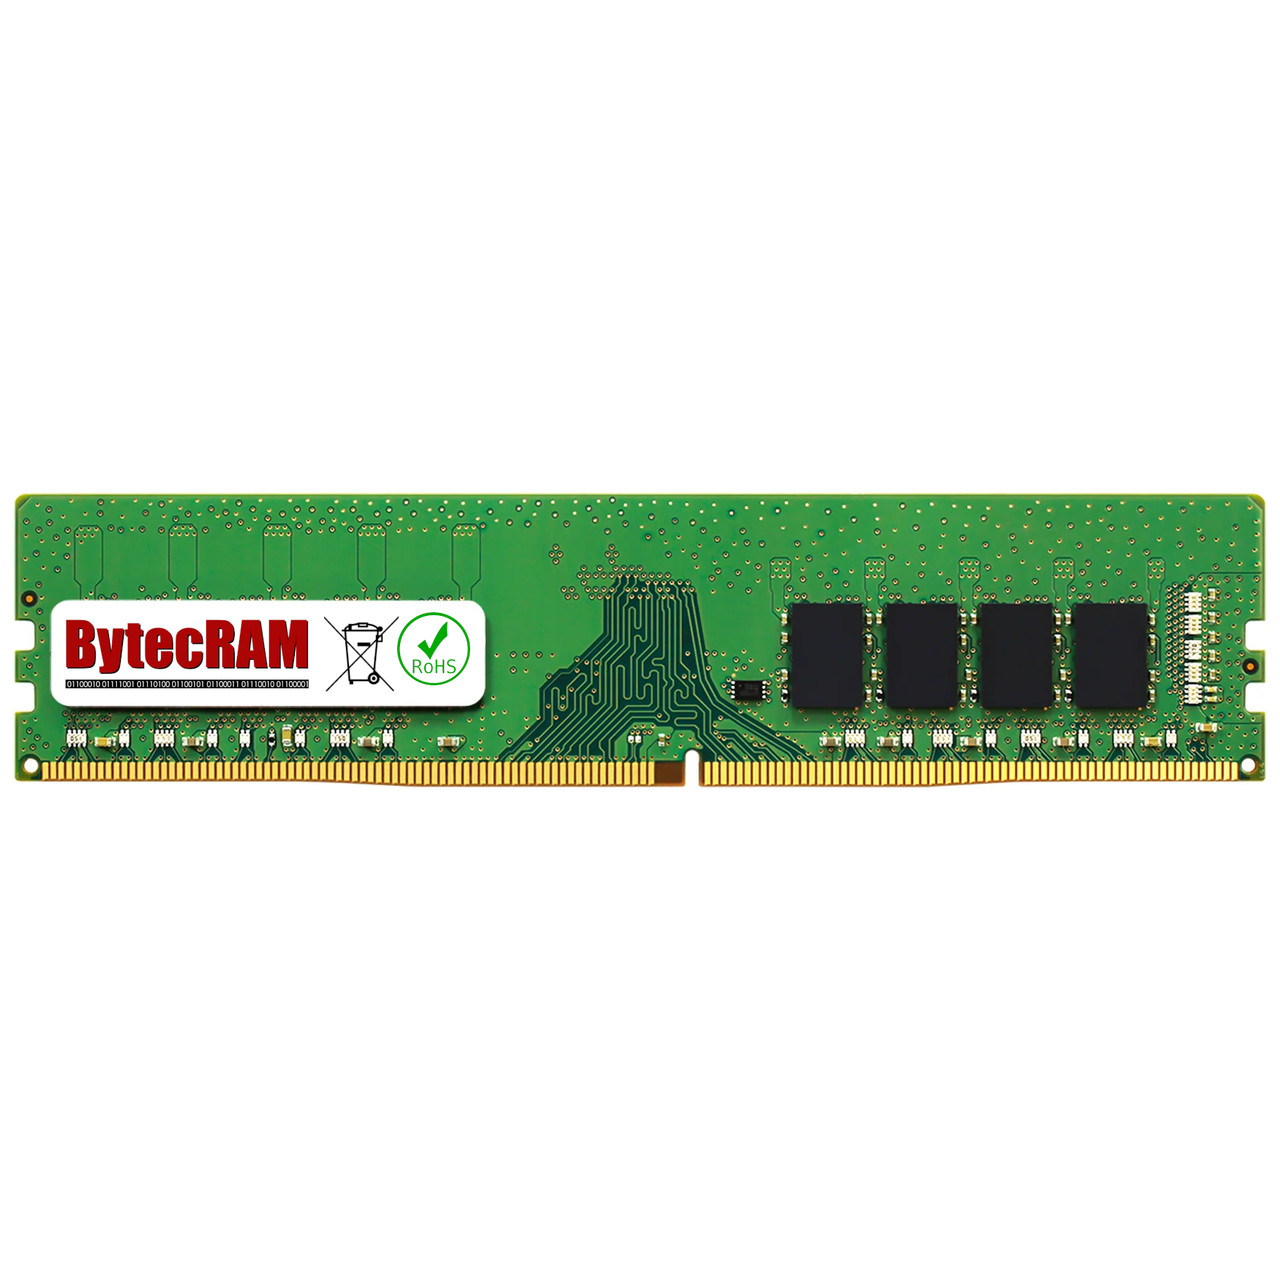 eBay*8GB HP Omen 870-245qe DDR4 2133MHz UDIMM Memory RAM Upgrade